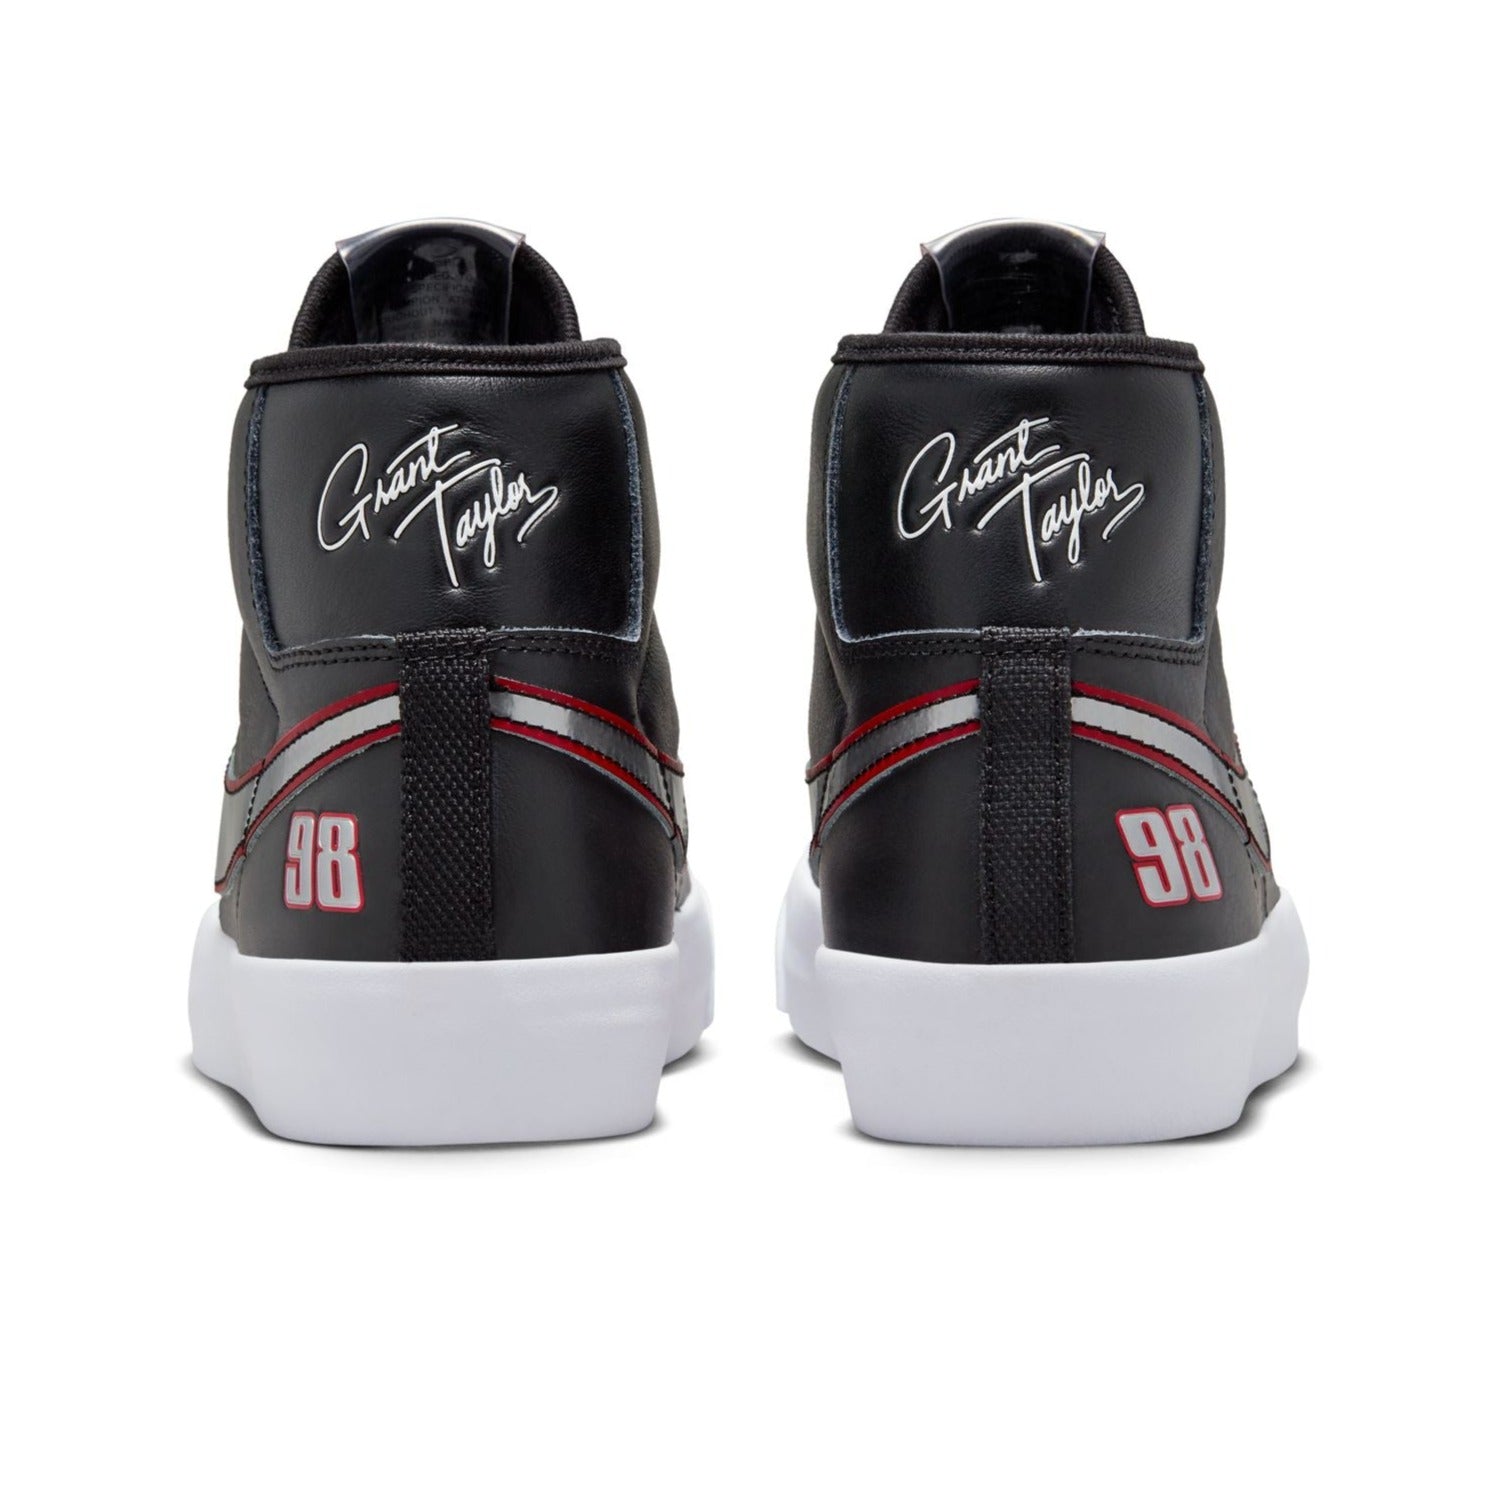 Black Grant Taylor Blazer Mid Pro Nike SB Skate Shoe Back